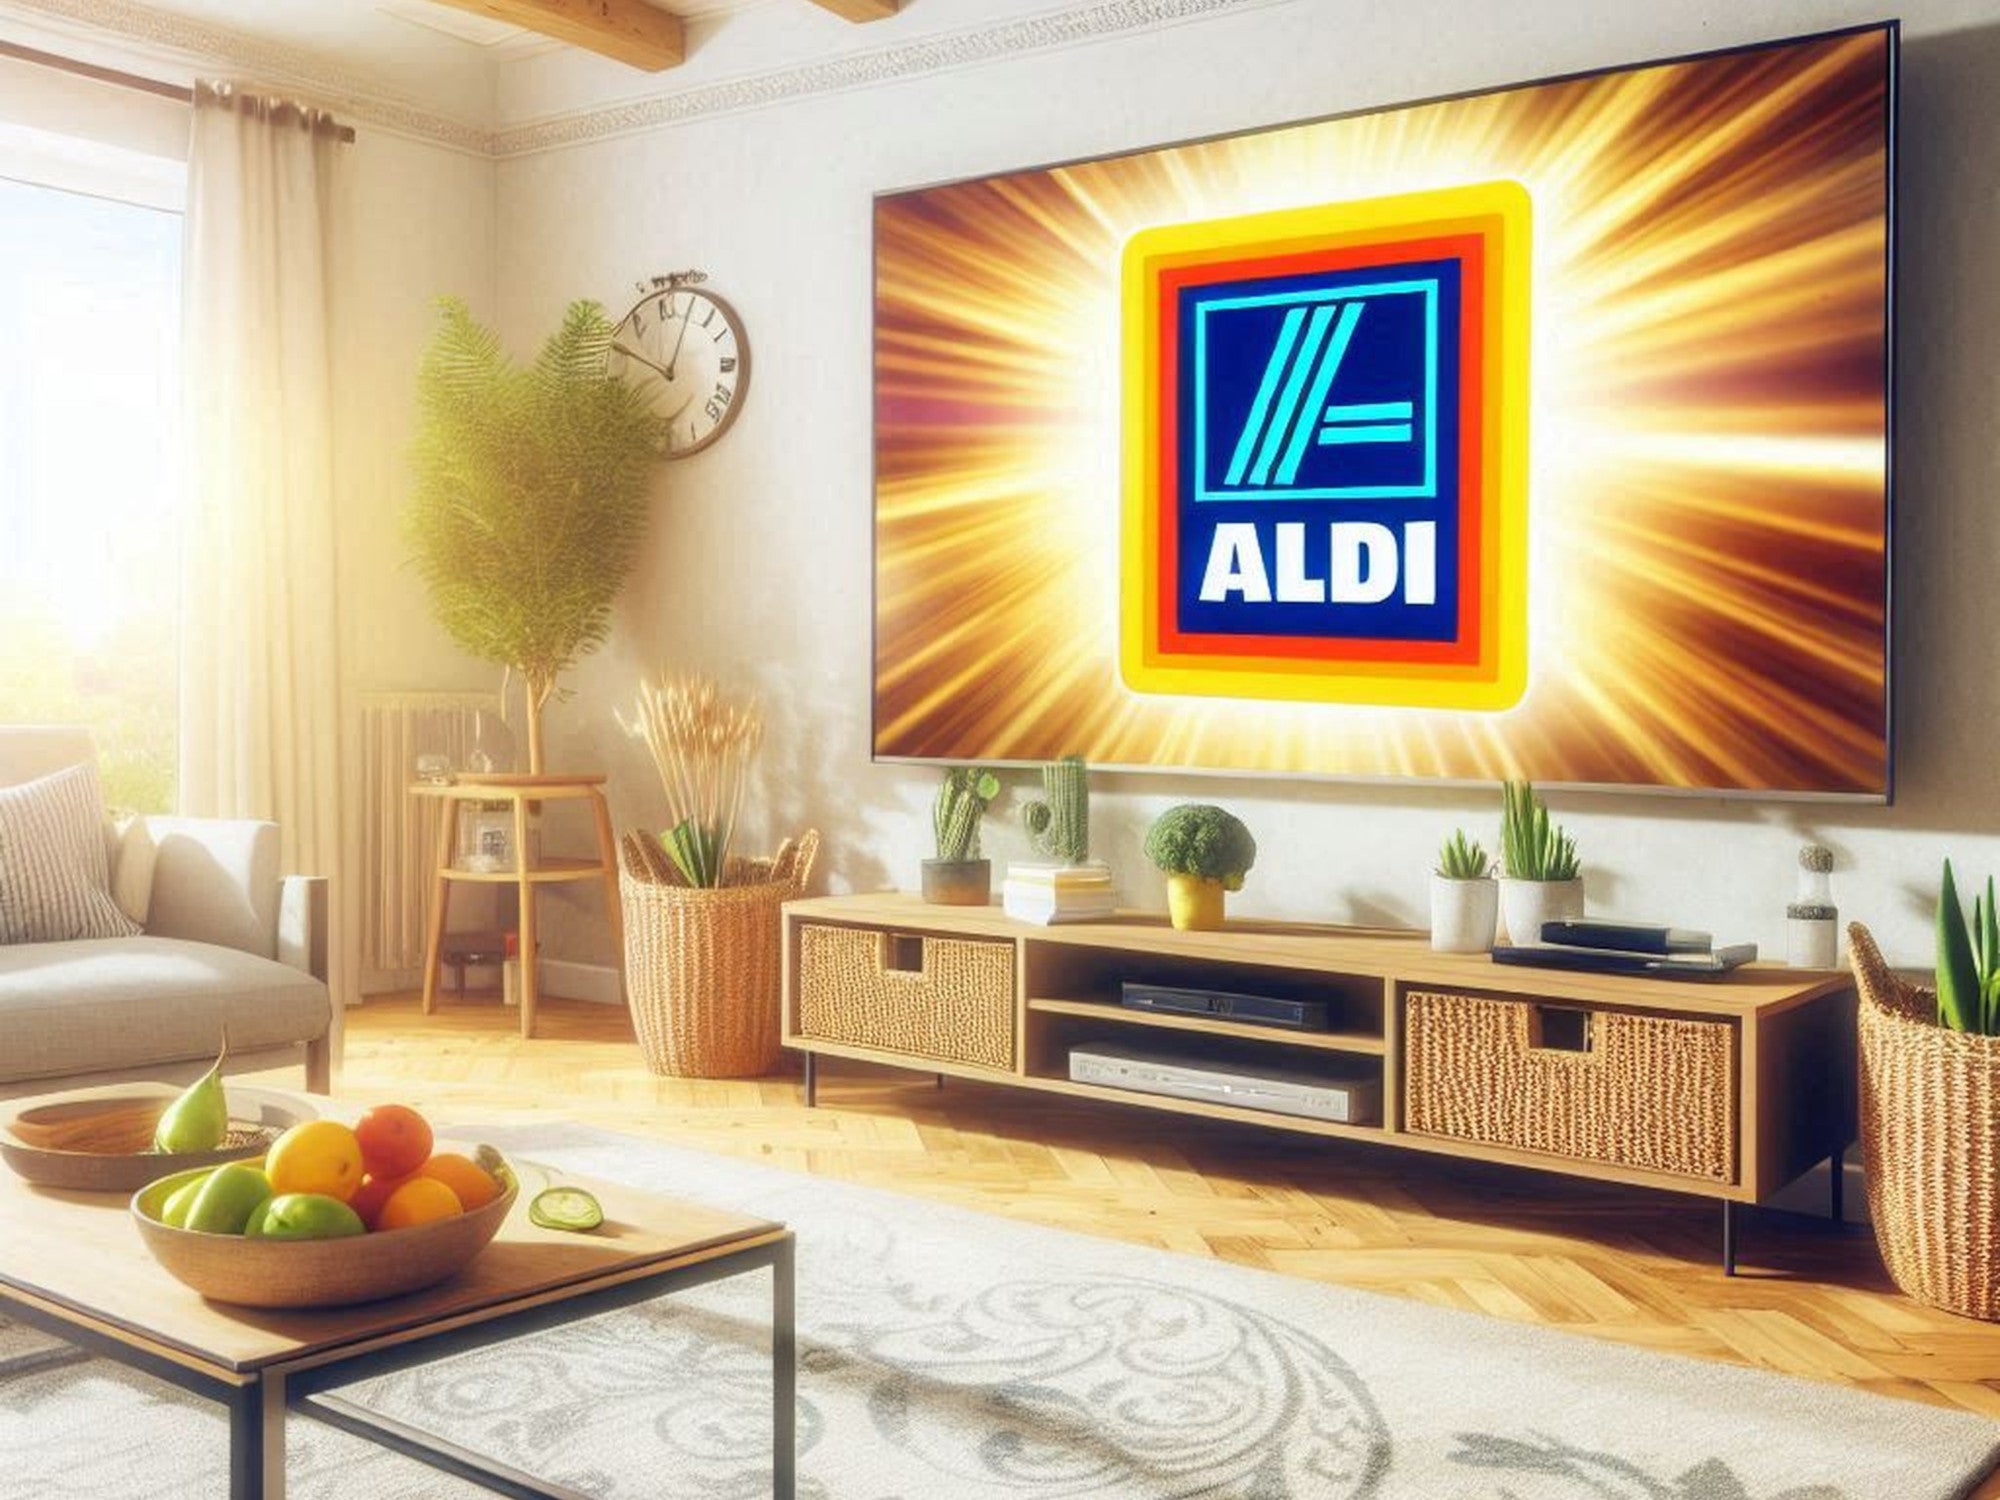 Fernseher mit dem Logo von Aldi auf dem Display in einem Wohnzimmer.